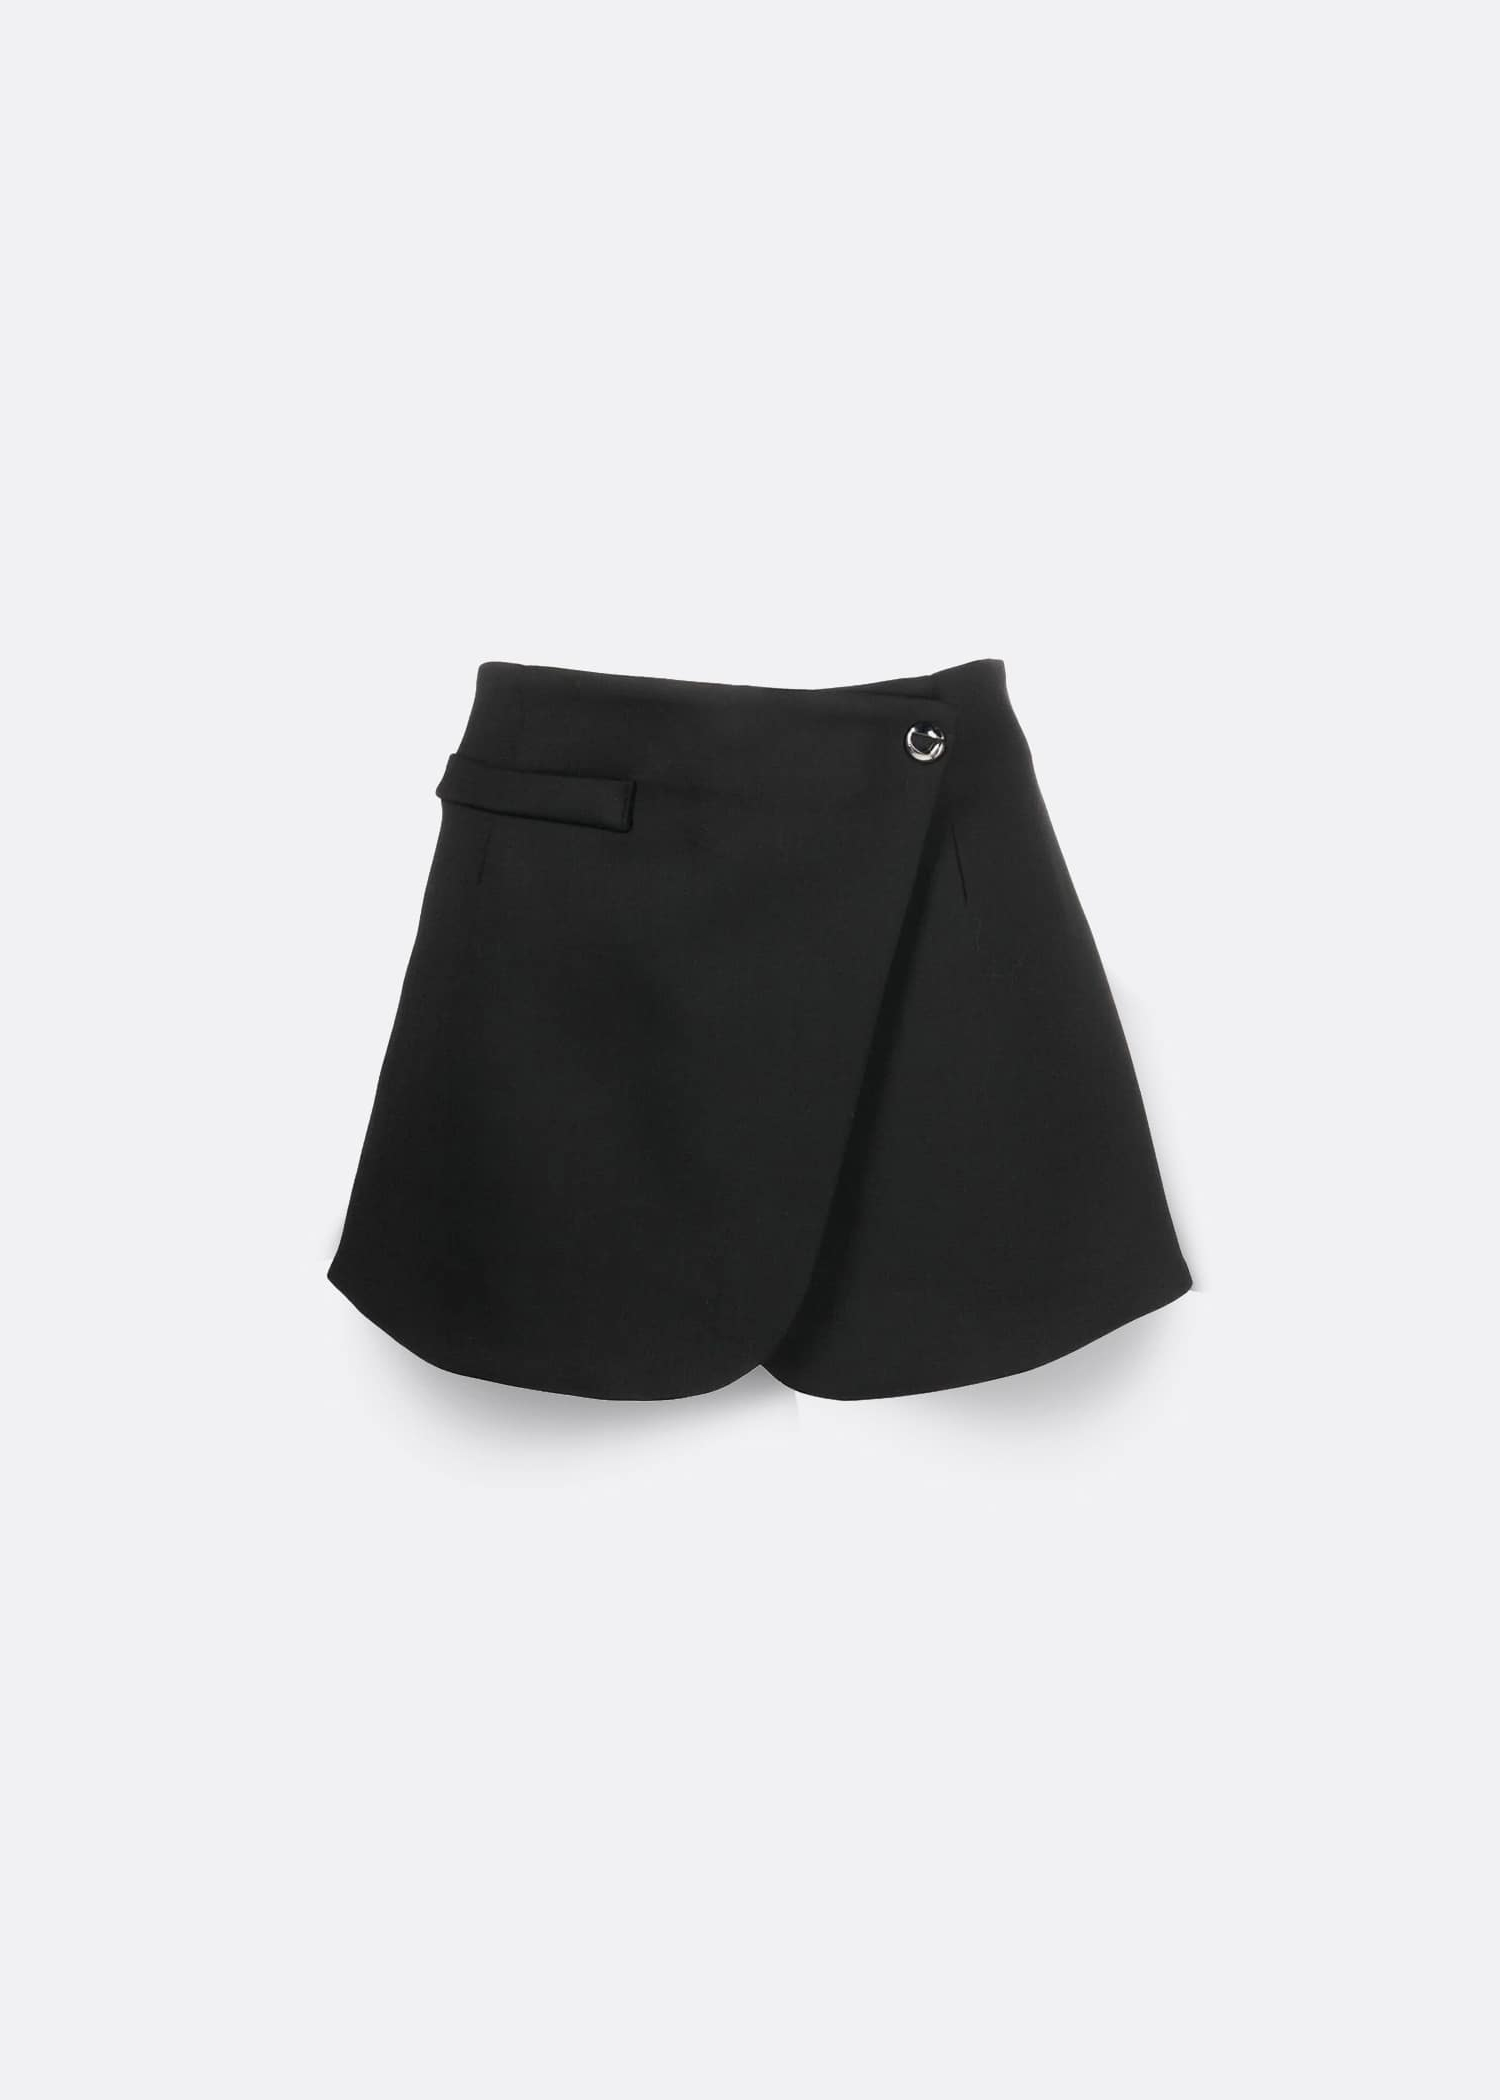 Coperni Tailored Mini Skirt